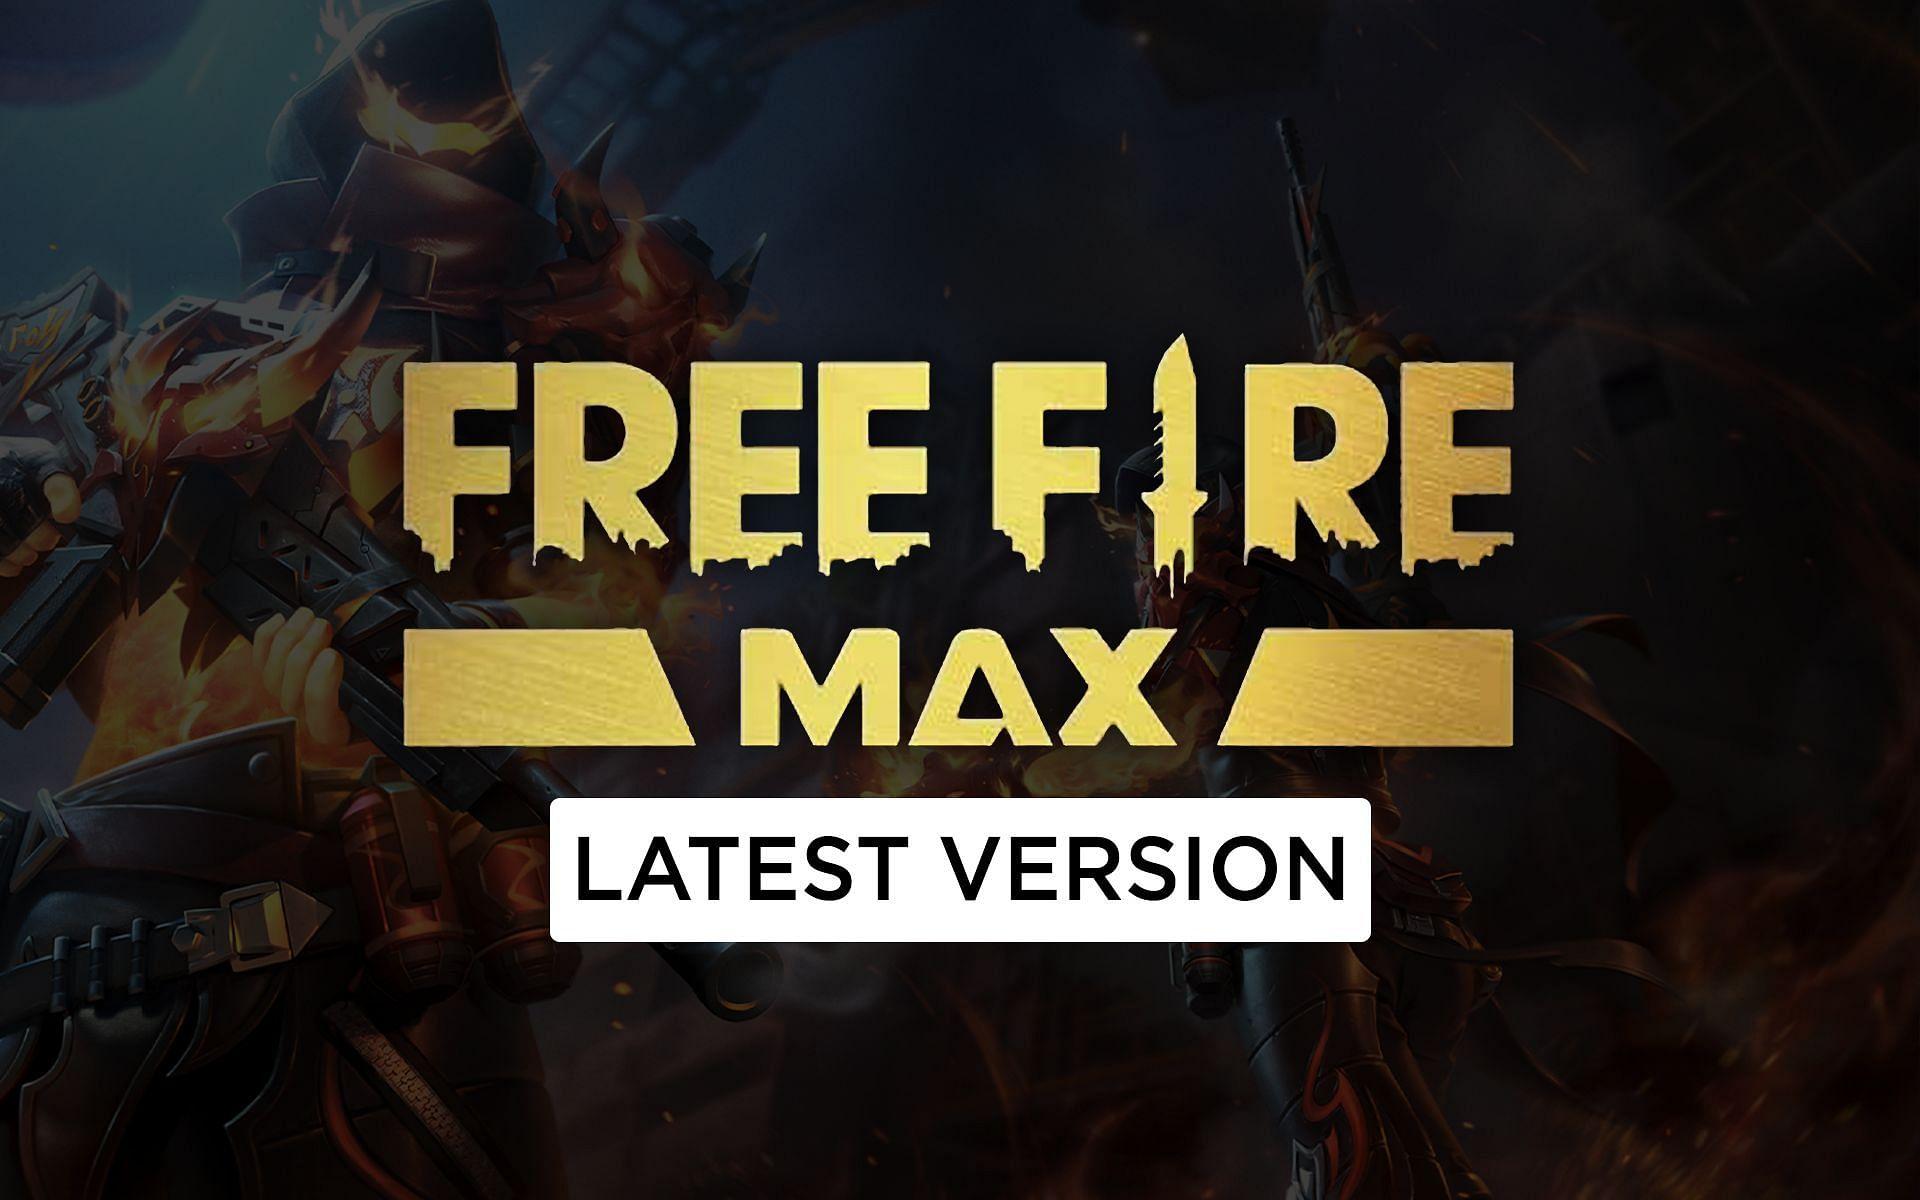 Free Fire Max no PC: como baixar e instalar com emulador